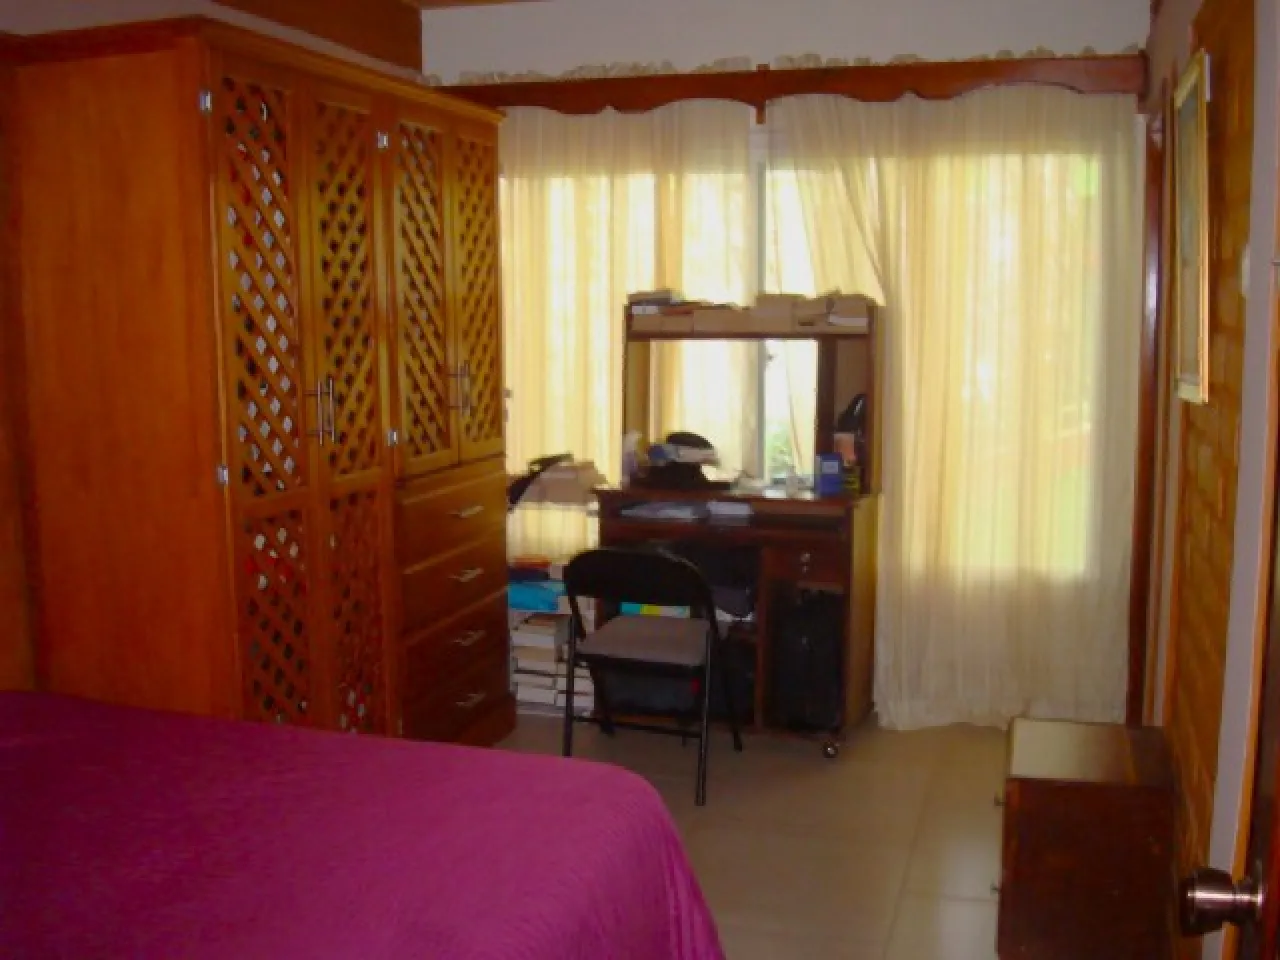 Habitación cuenta con cama matrimonial, clóset de madera, escritorio y silla de color negro, ventanas con cortinas blancas.